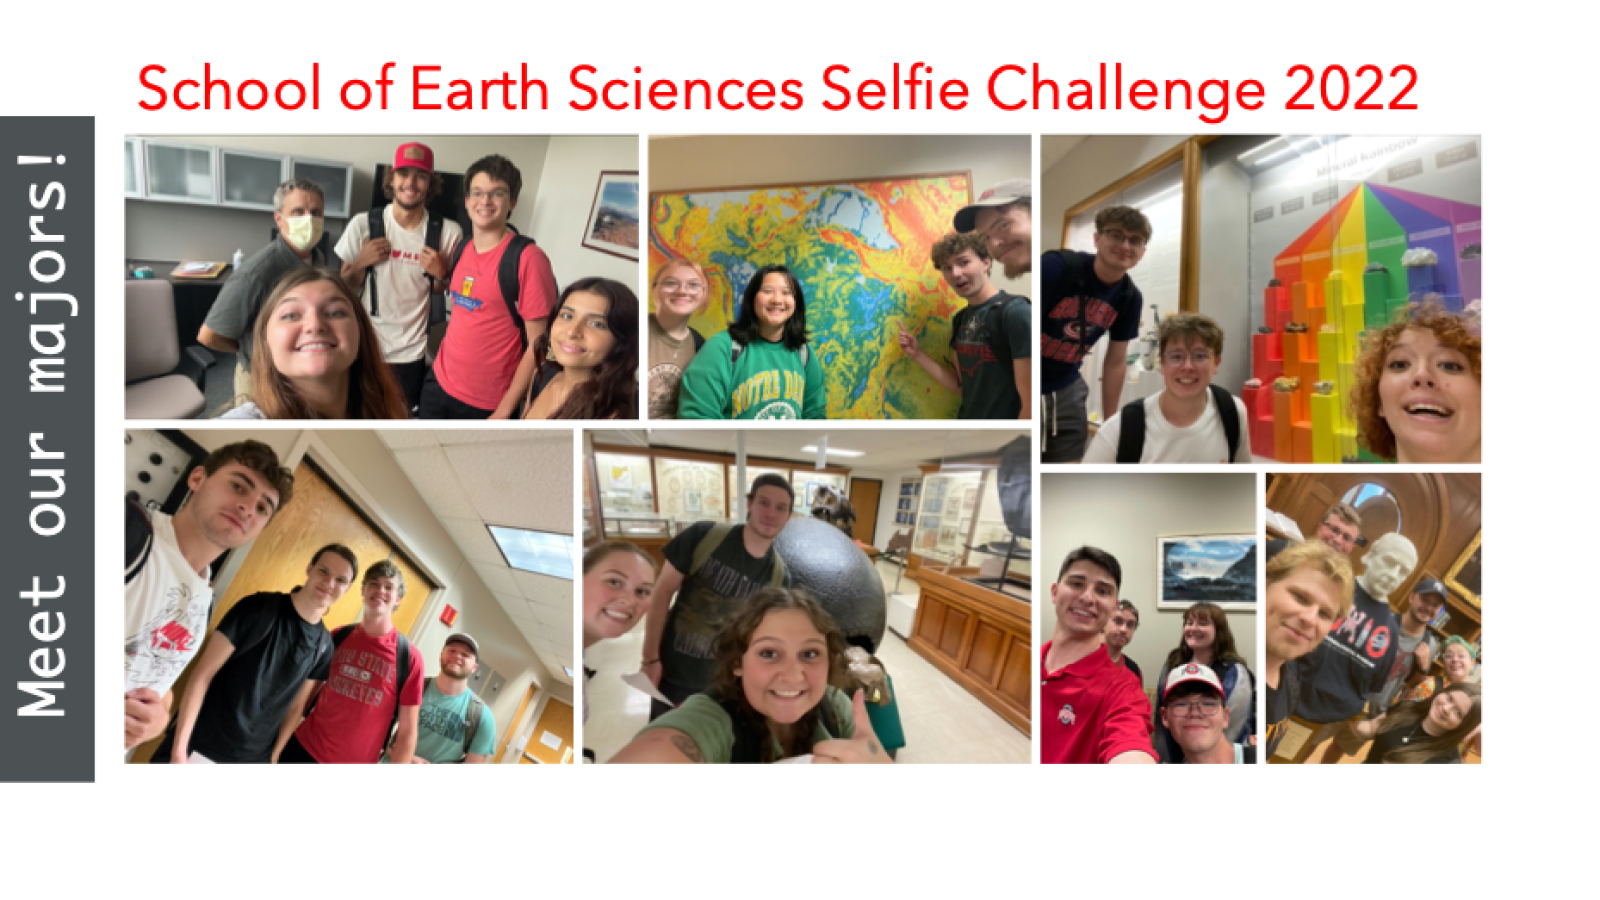 School of Earth Sciences Selfie Challenge 2022